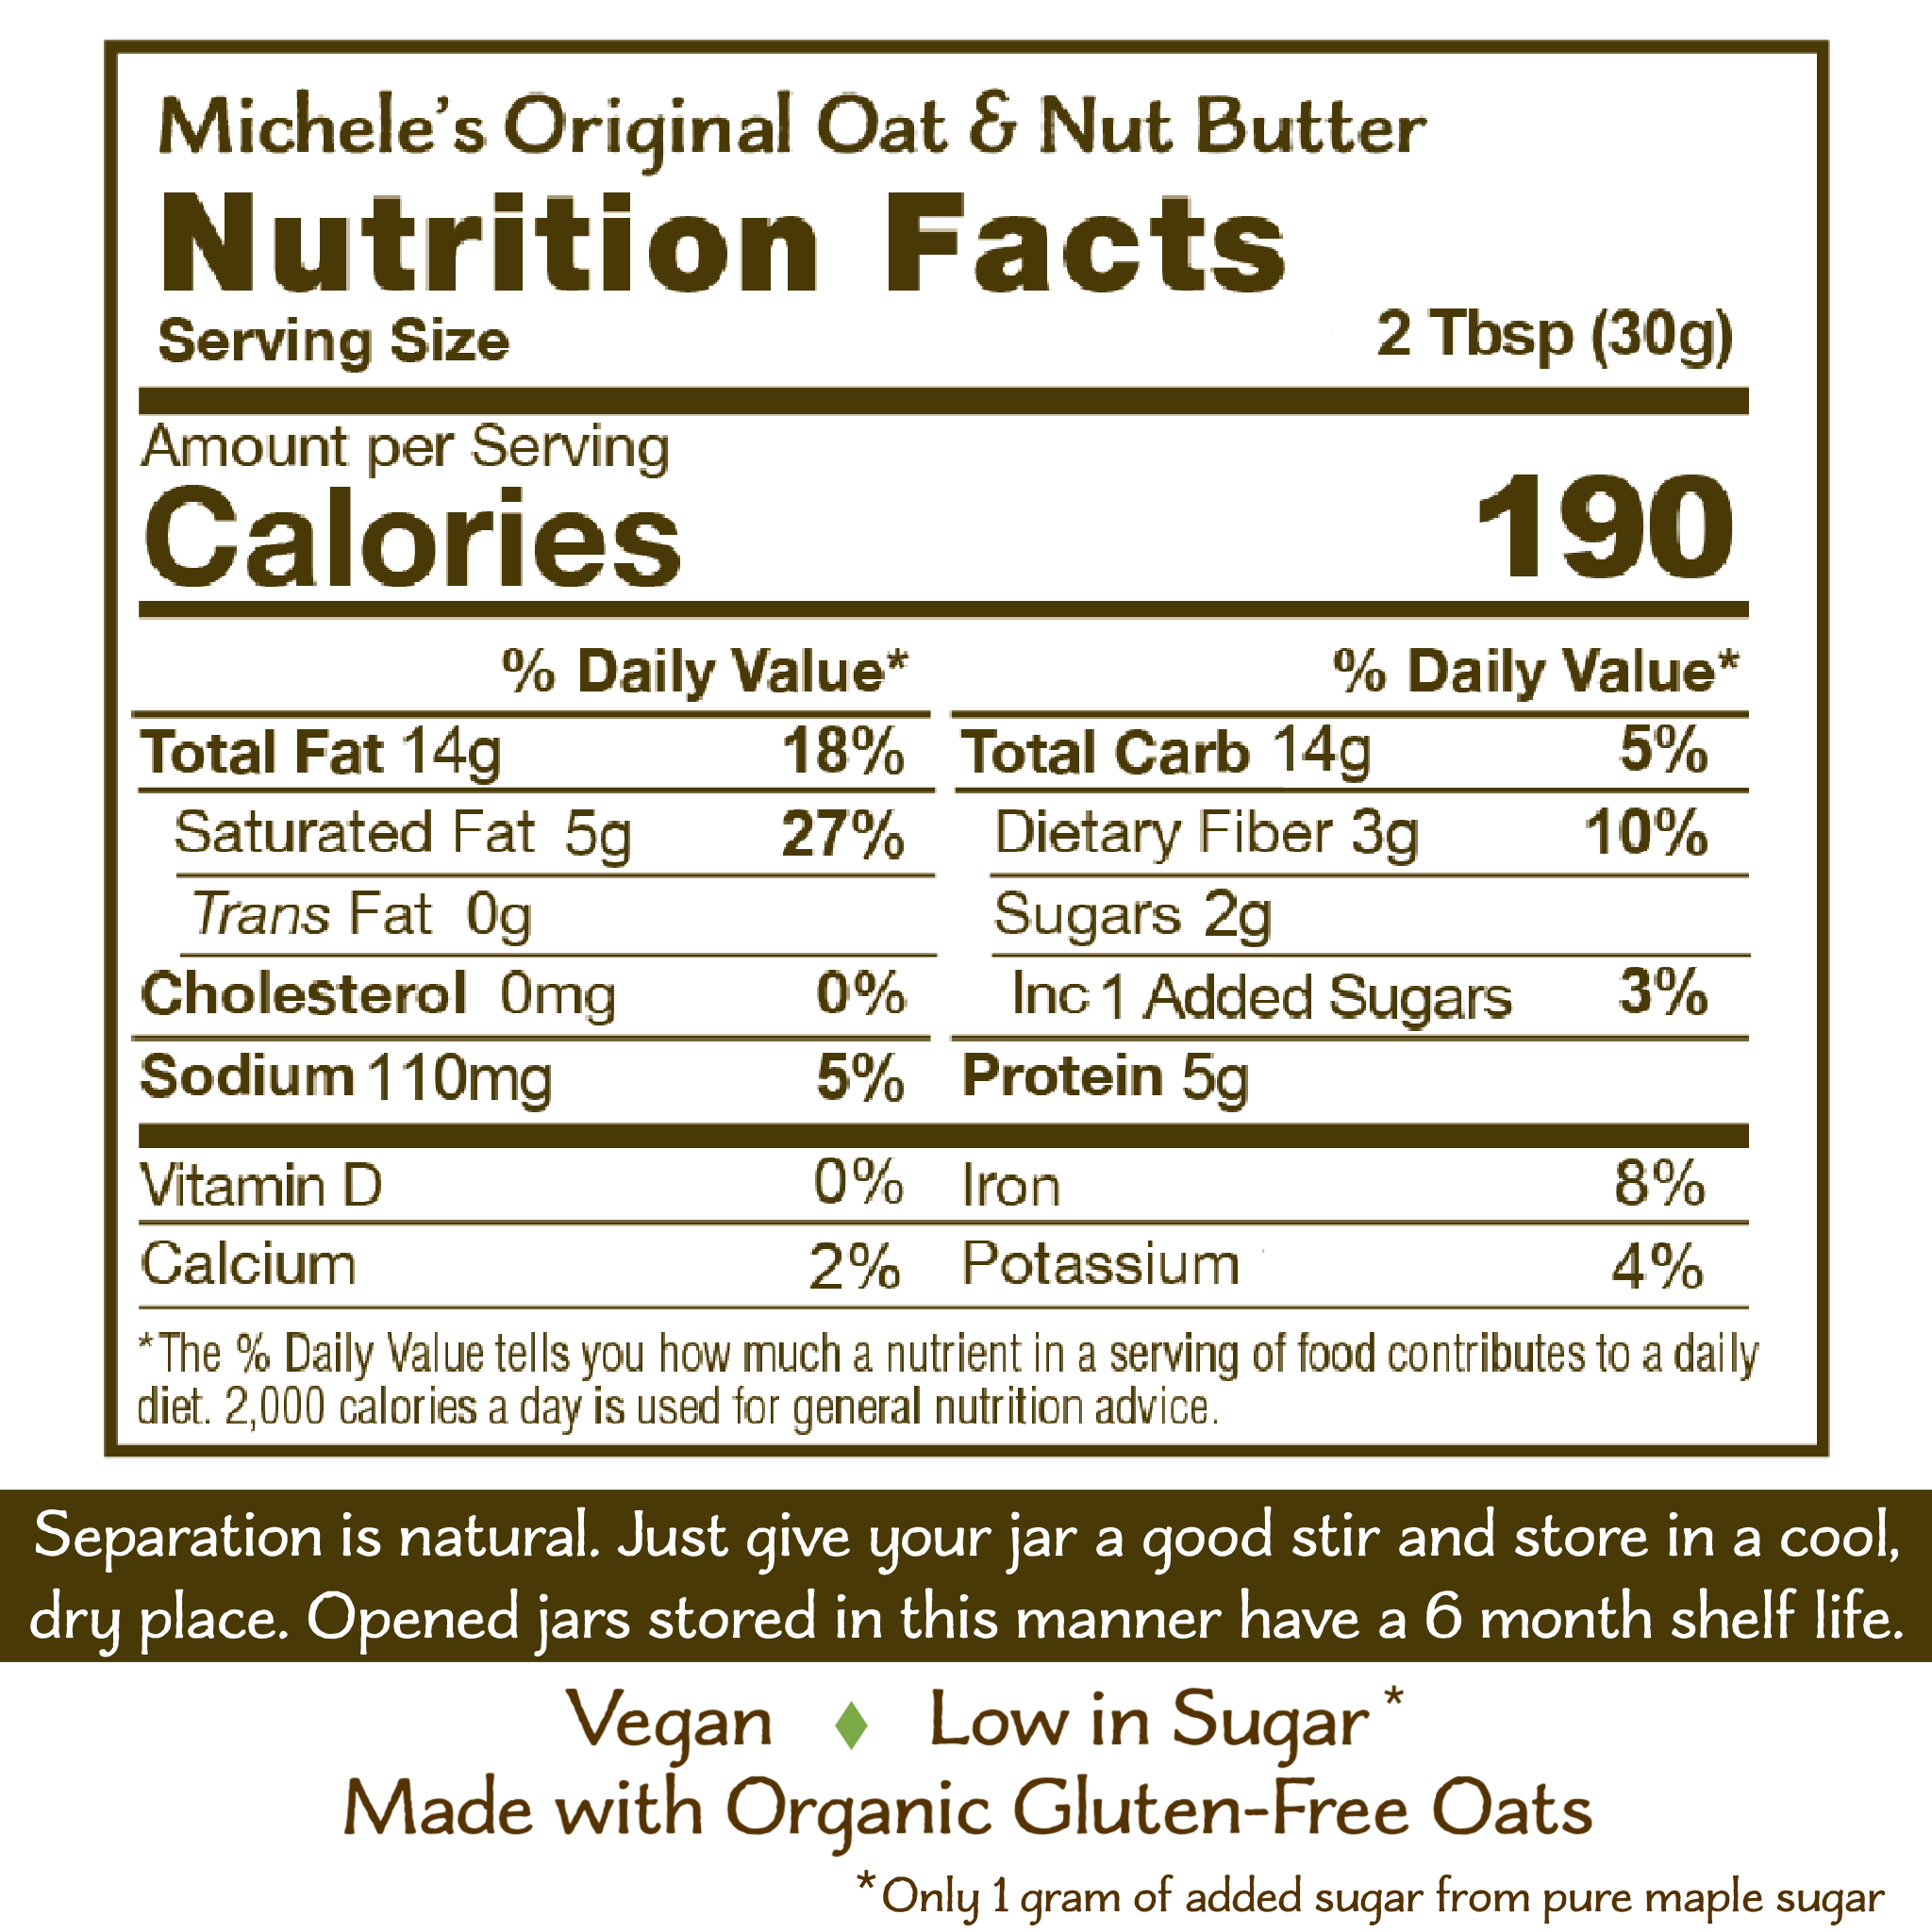 Original Oat & Nut Butter